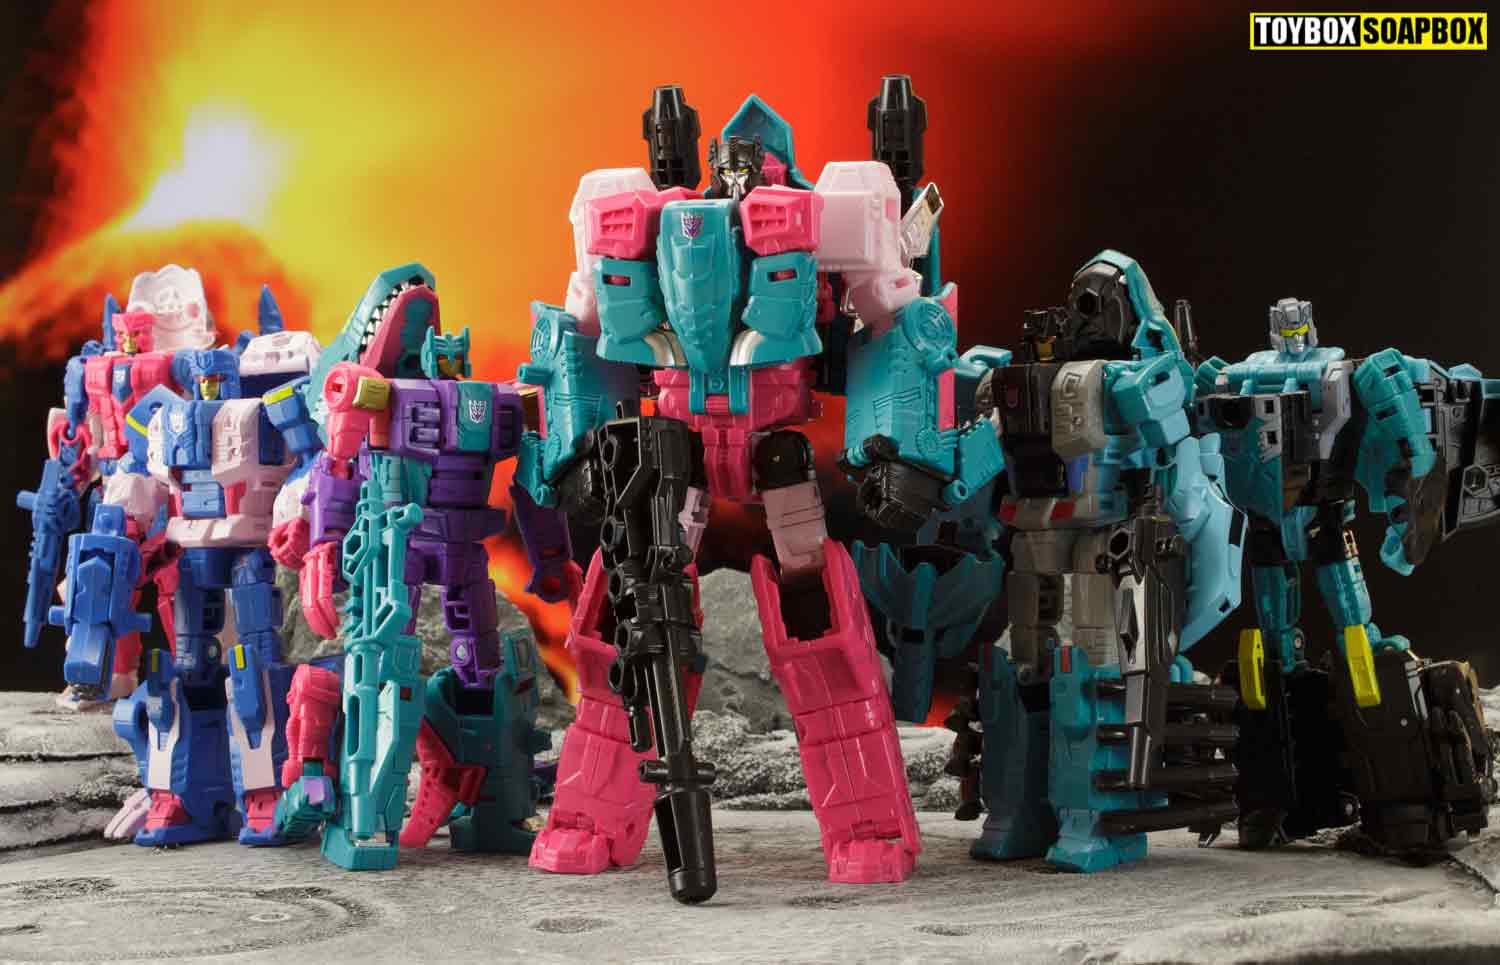 Fraksi Transformers